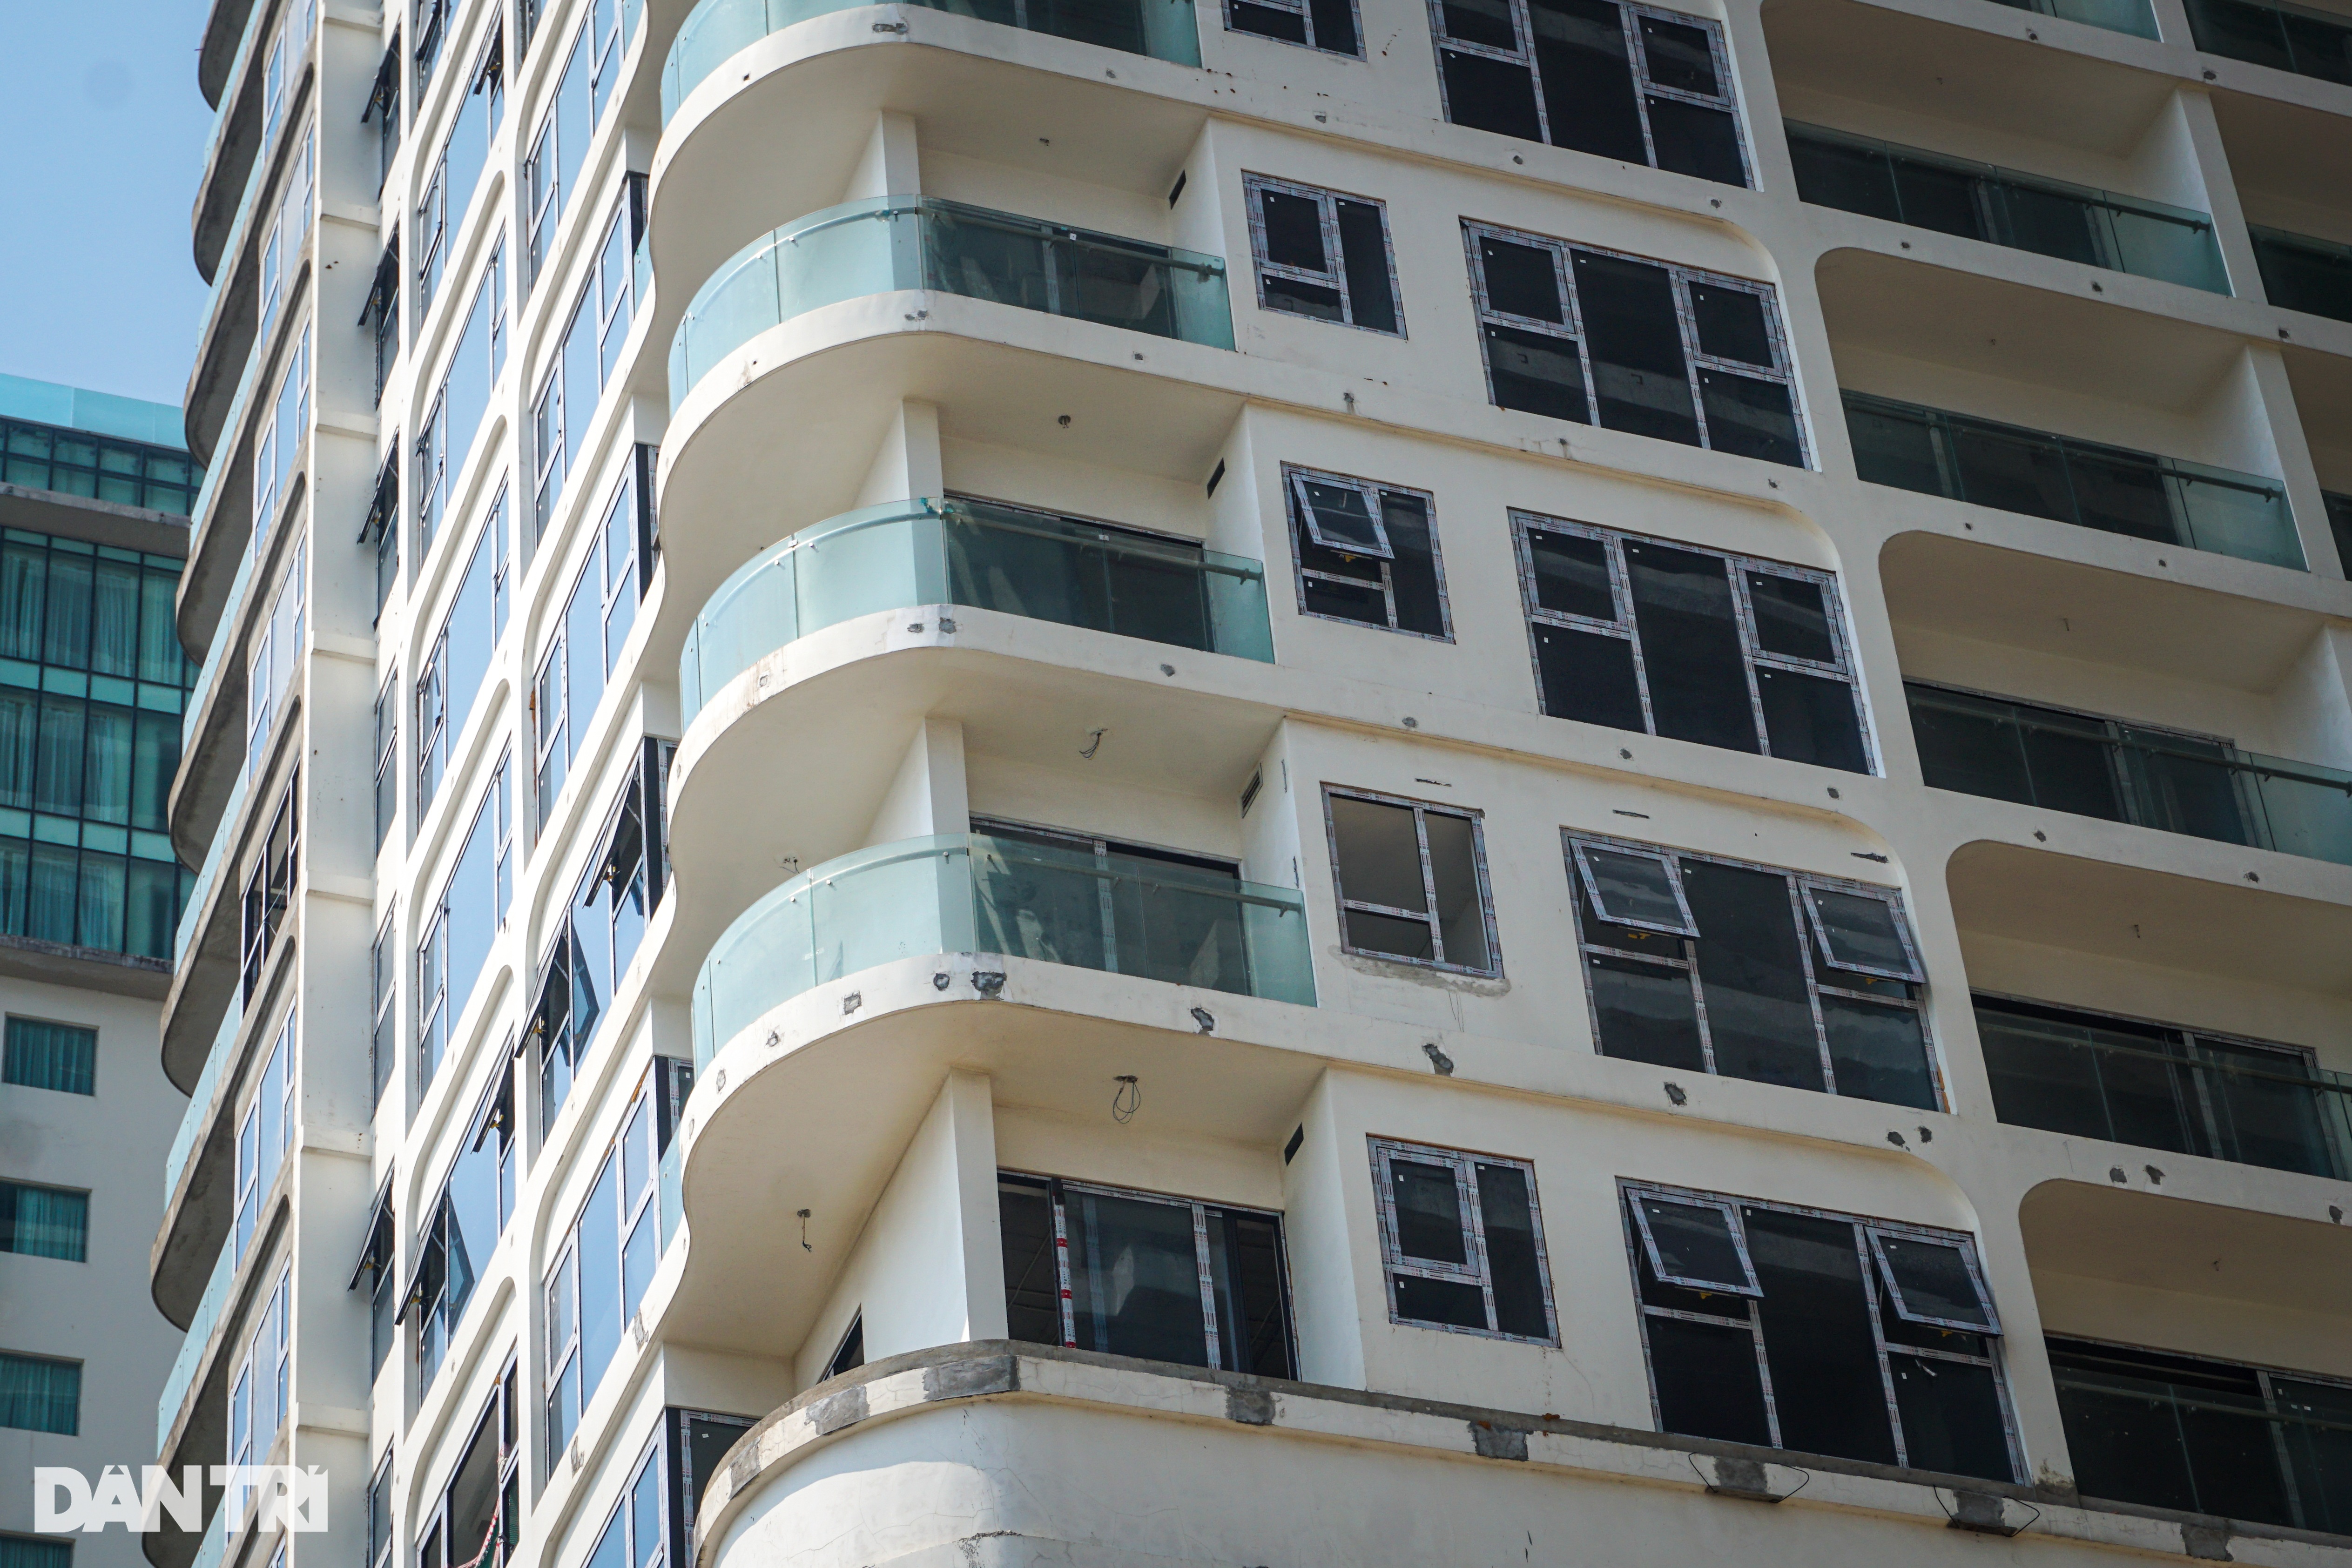 View - 4 tòa tháp condotel thành căn hộ bên biển Đà Nẵng được huy động vốn | Báo Dân trí